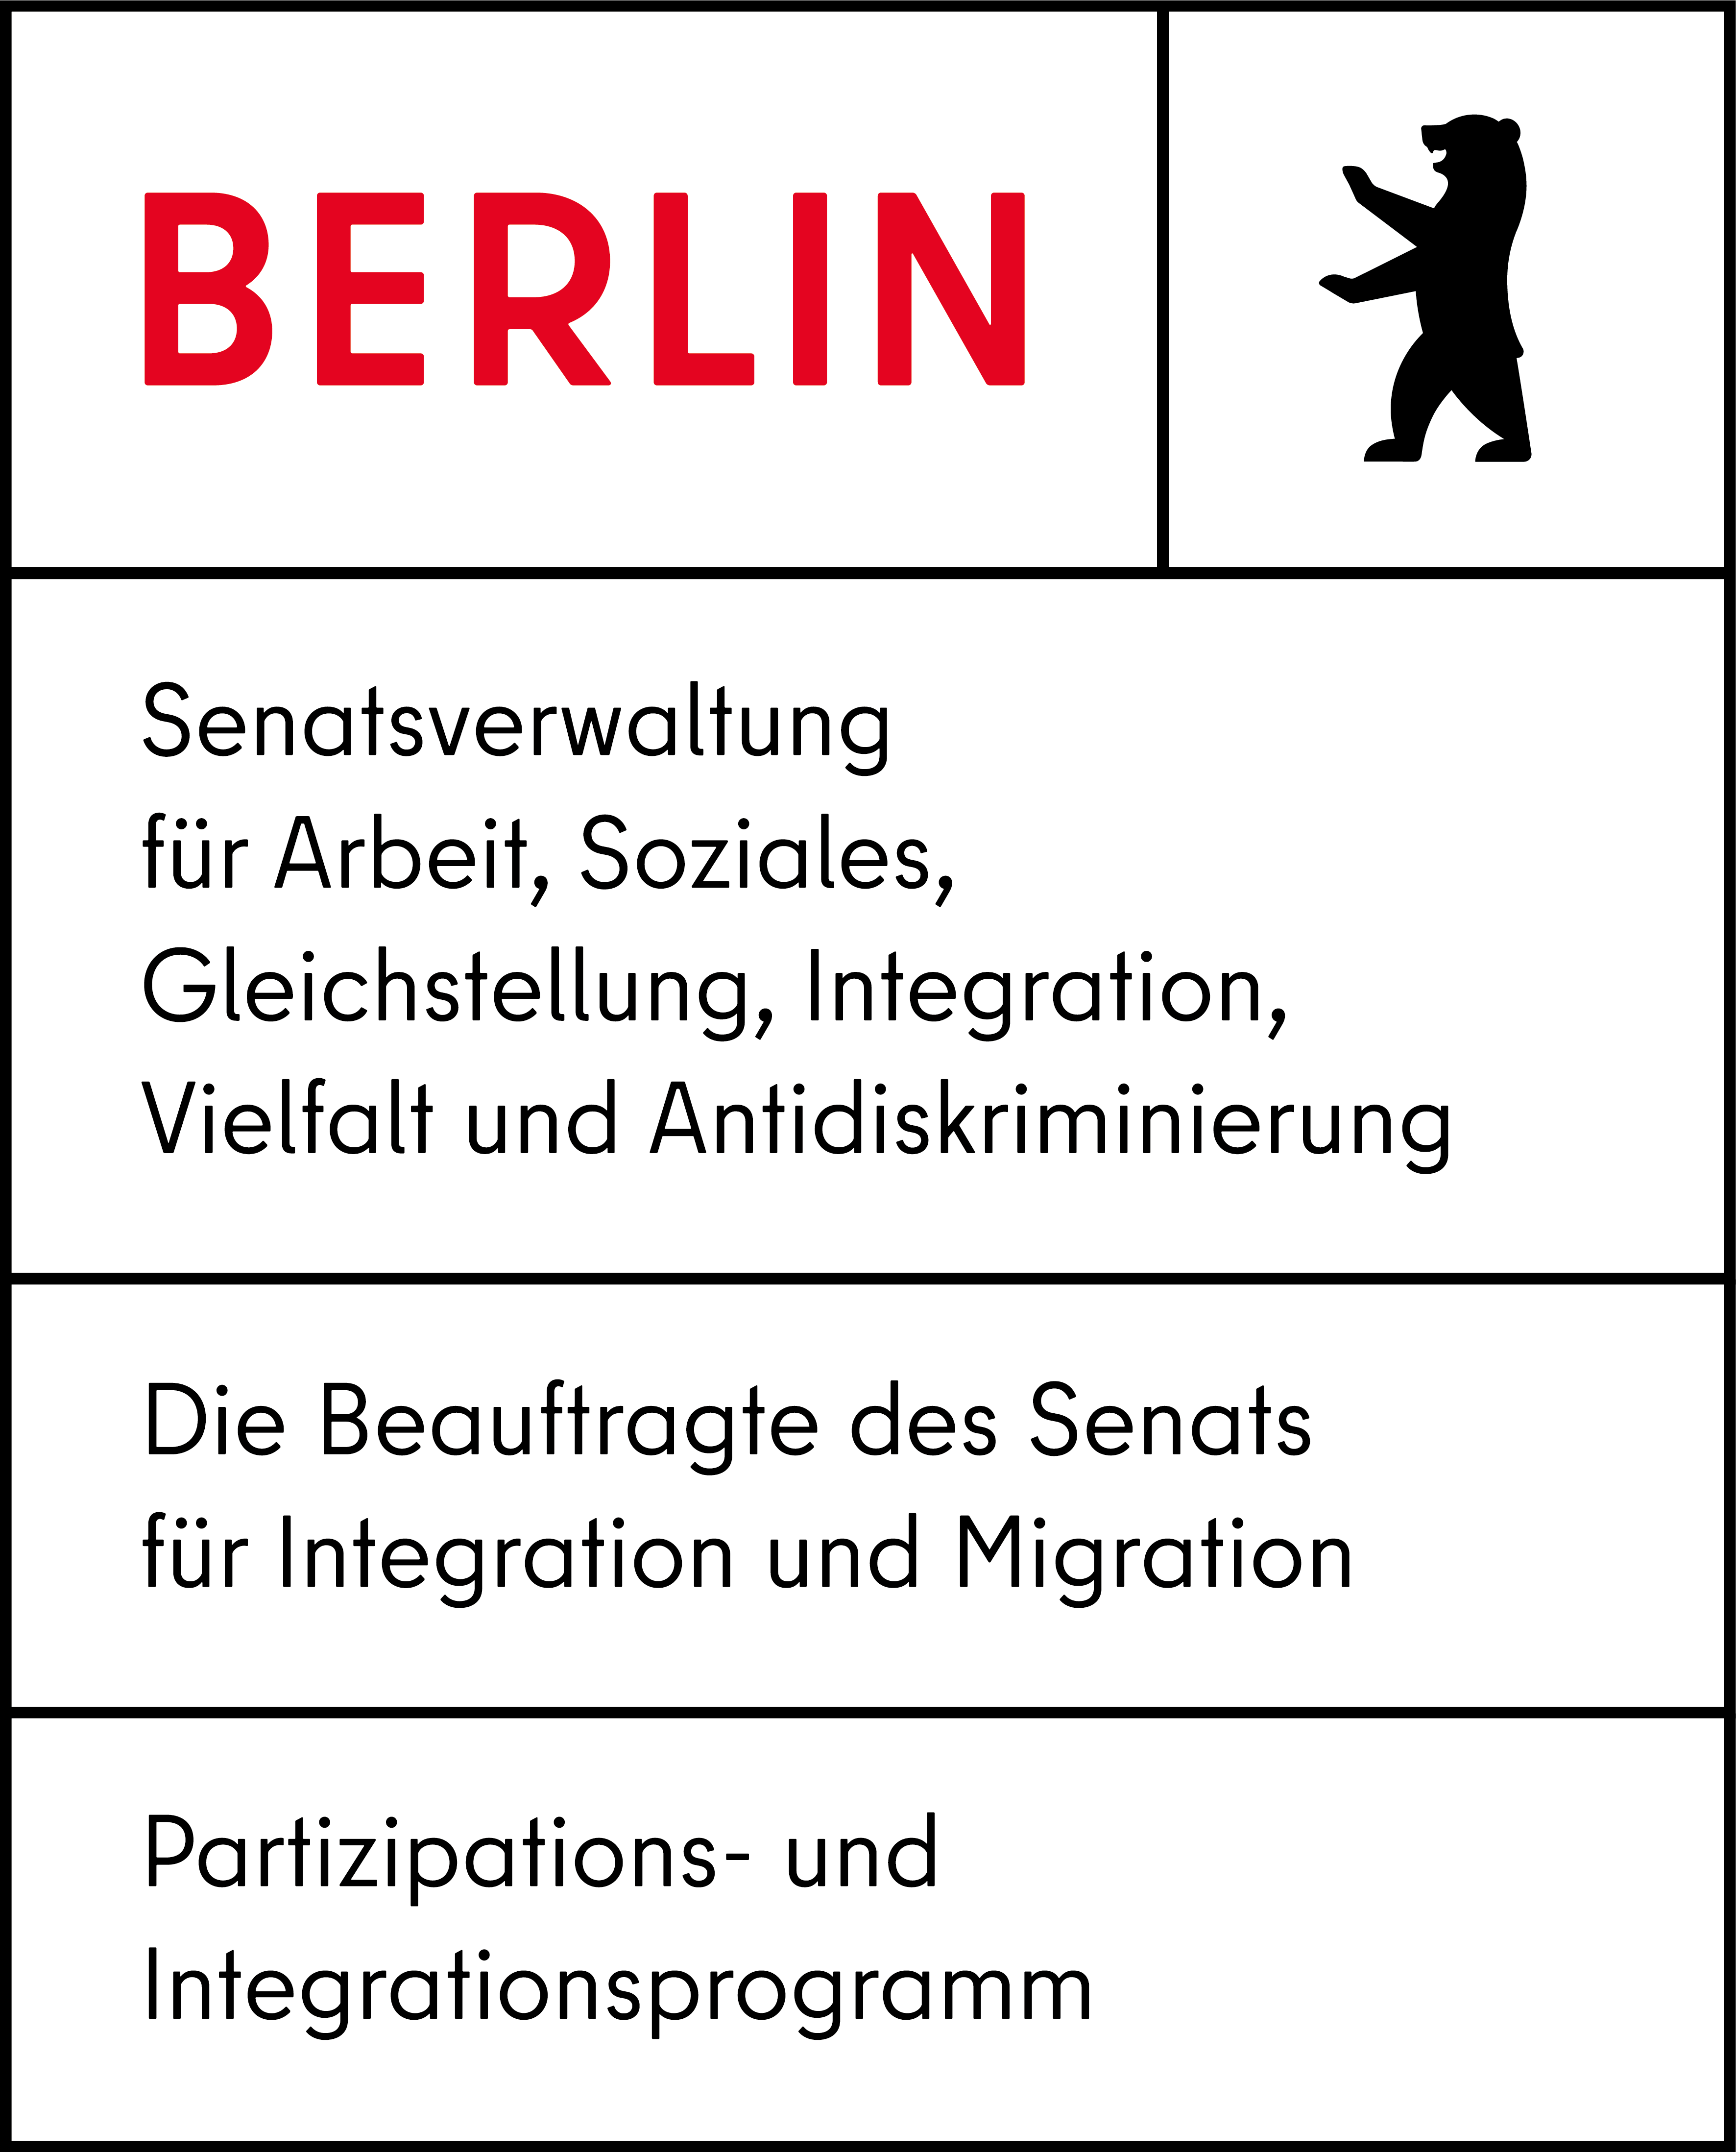 Logo: Berlin - Senatsverwaltung für Arbeit, Soziales, Gleichstellung, Integration, Vielfalt und Antidiskriminierung - Die Beauftrage des Senats für Integration und Migration - Patizipations- und Integrationsprogramm